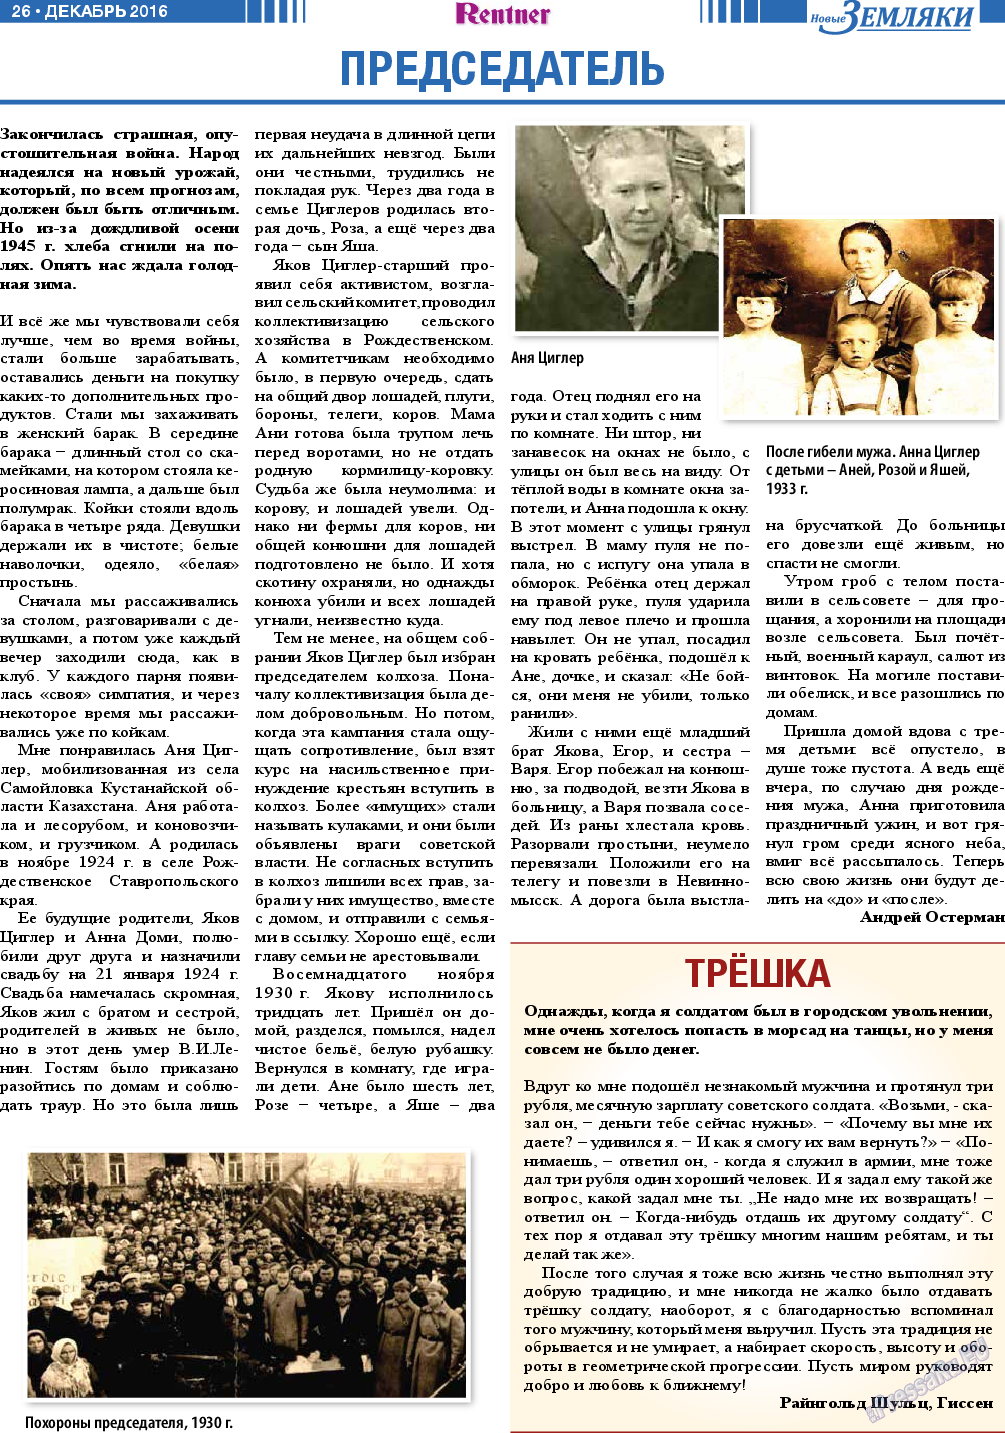 Новые Земляки, газета. 2016 №12 стр.26